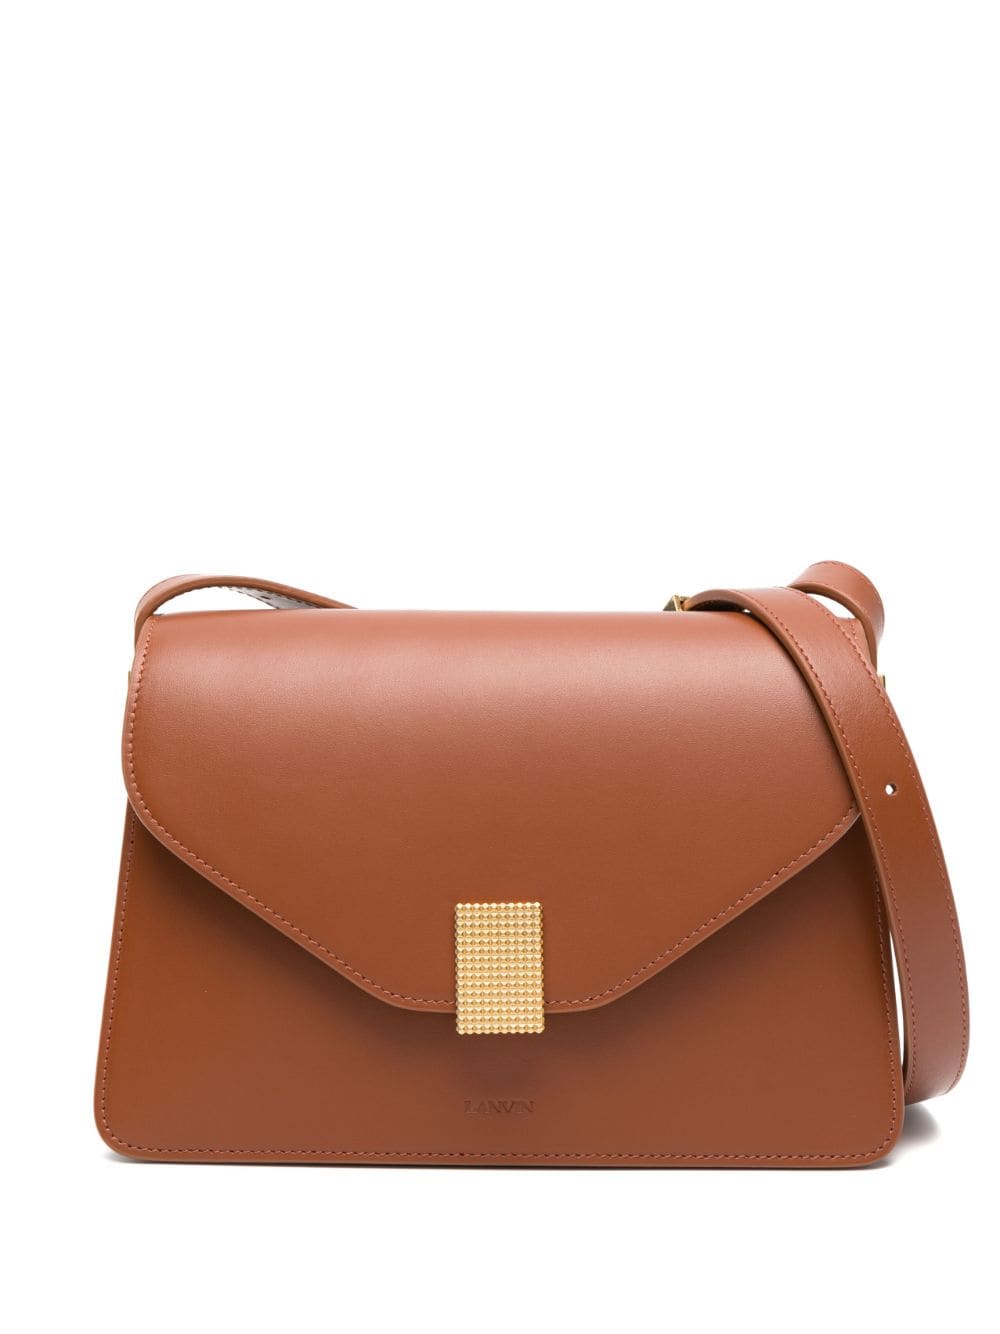 Lanvin Concerto Leather Shoulder Bag In Brown